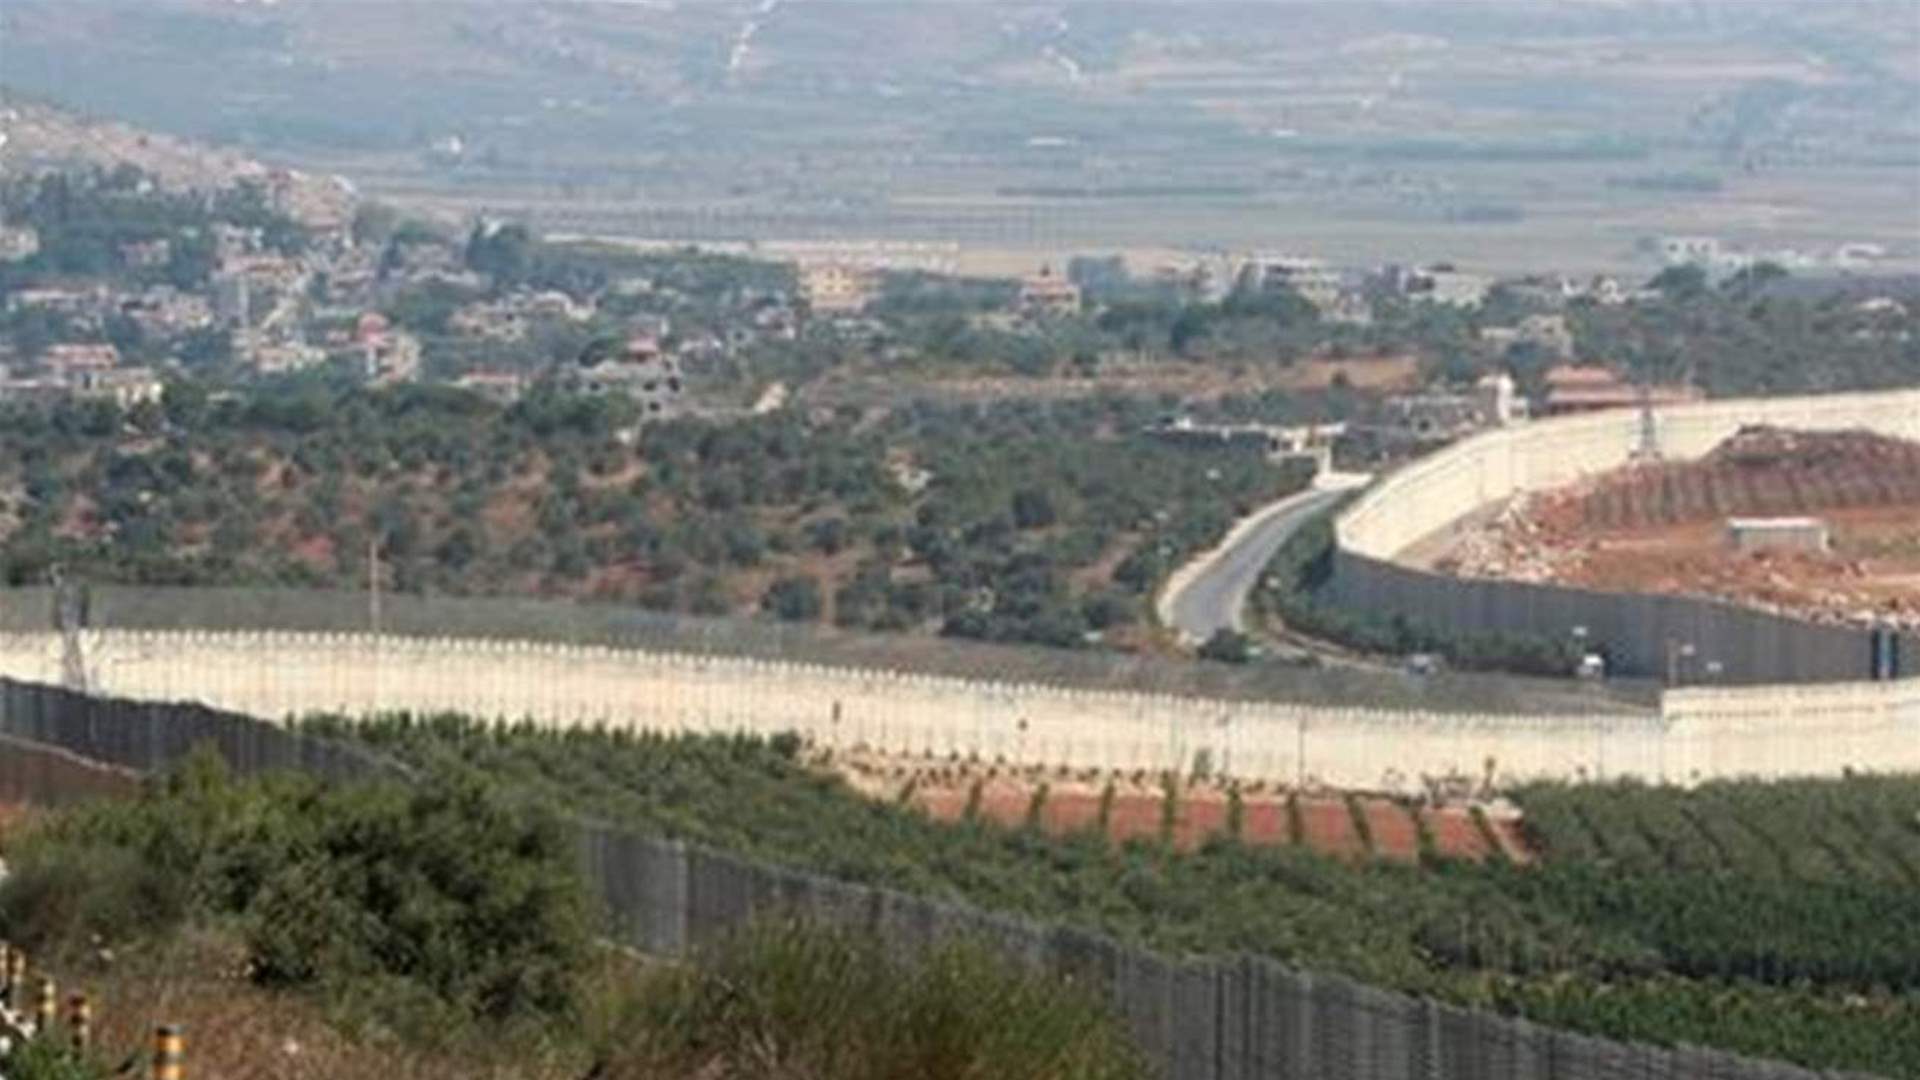 الجيش أوقف متسللًا من الأراضي الفلسطينية المحتلة عبر سهل مرجعيون